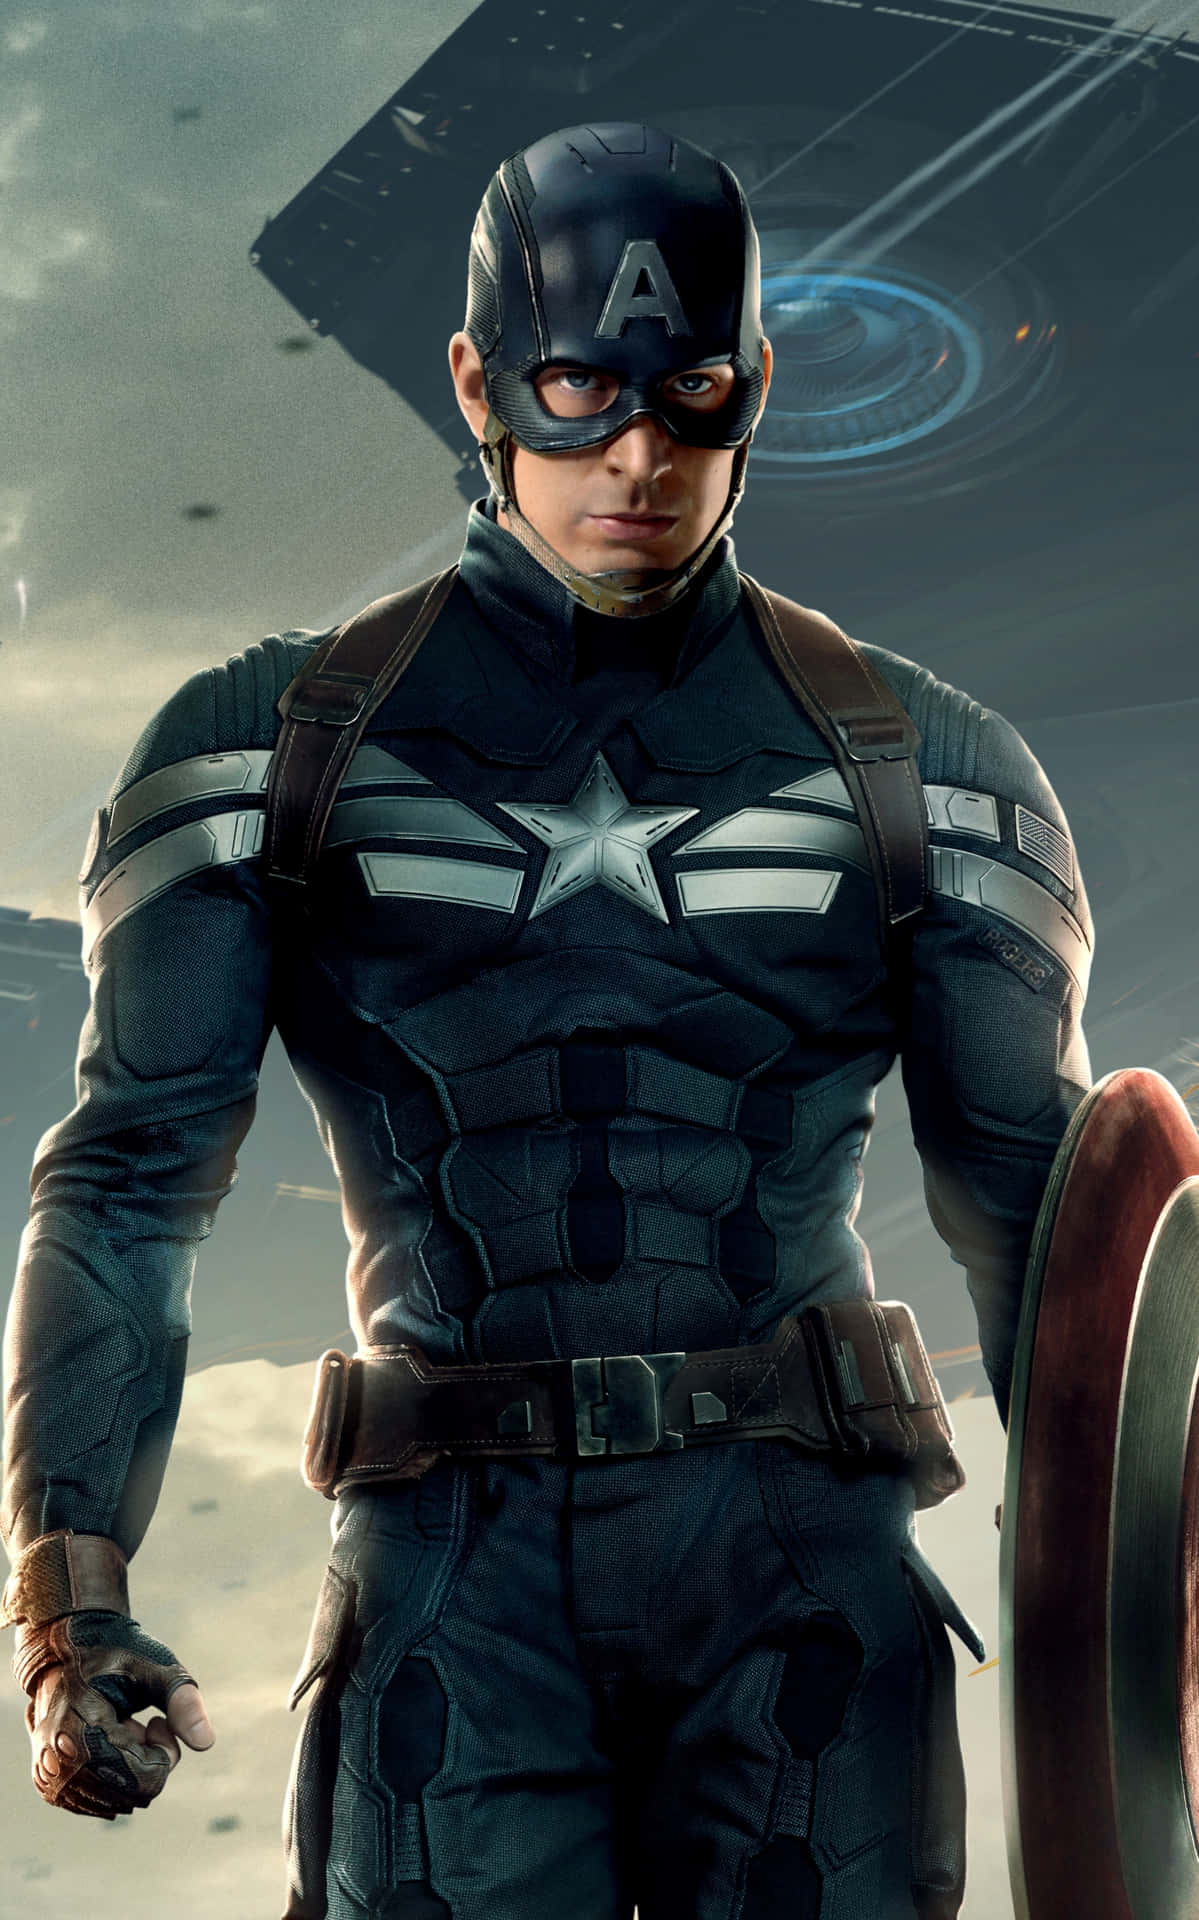 Captain America står stolt til kamp for retfærdighed. Wallpaper